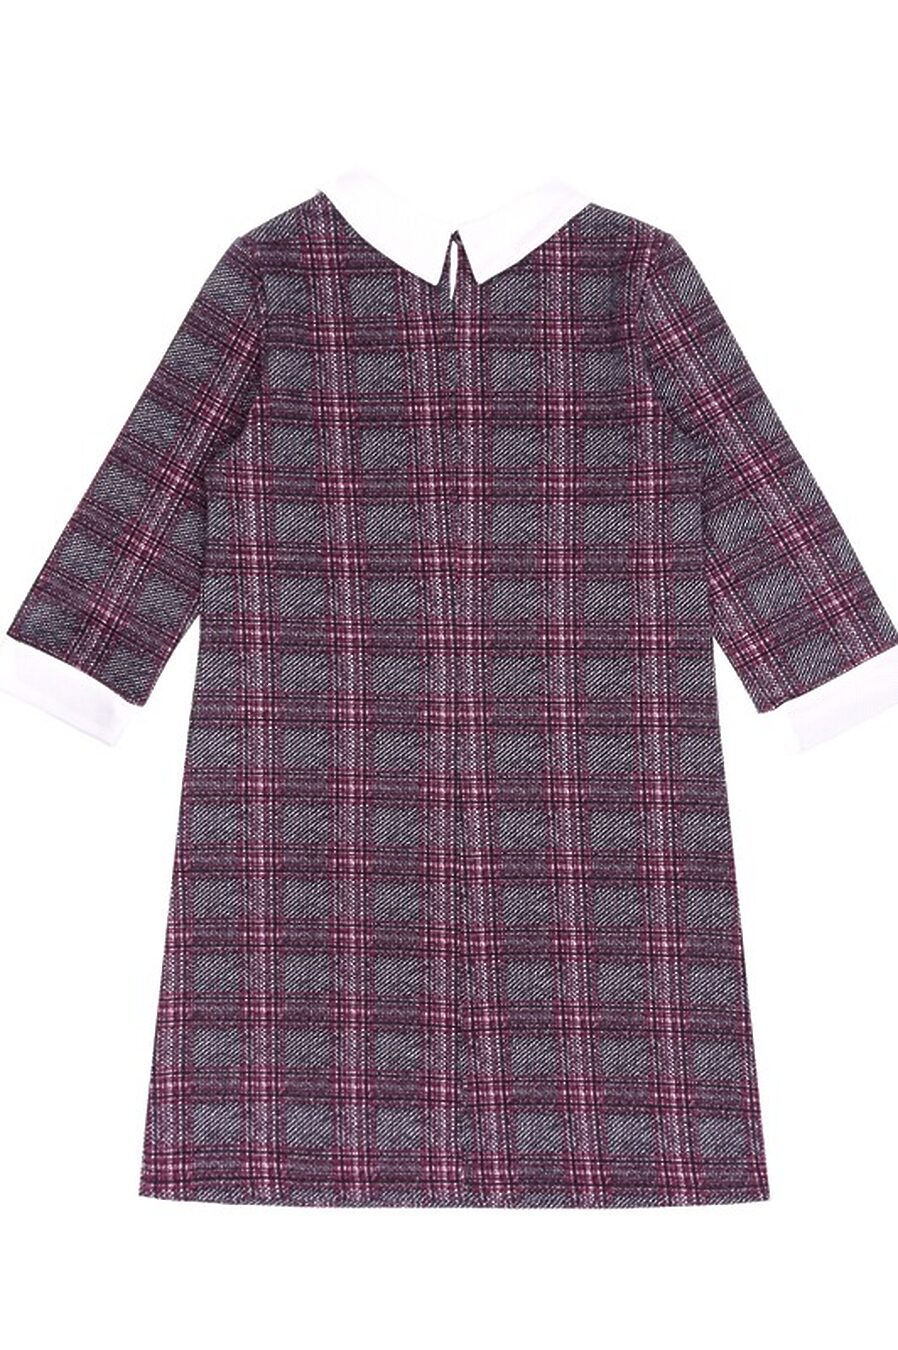 Платье для девочек АПРЕЛЬ 199351 купить оптом от производителя. Совместная покупка детской одежды в OptMoyo